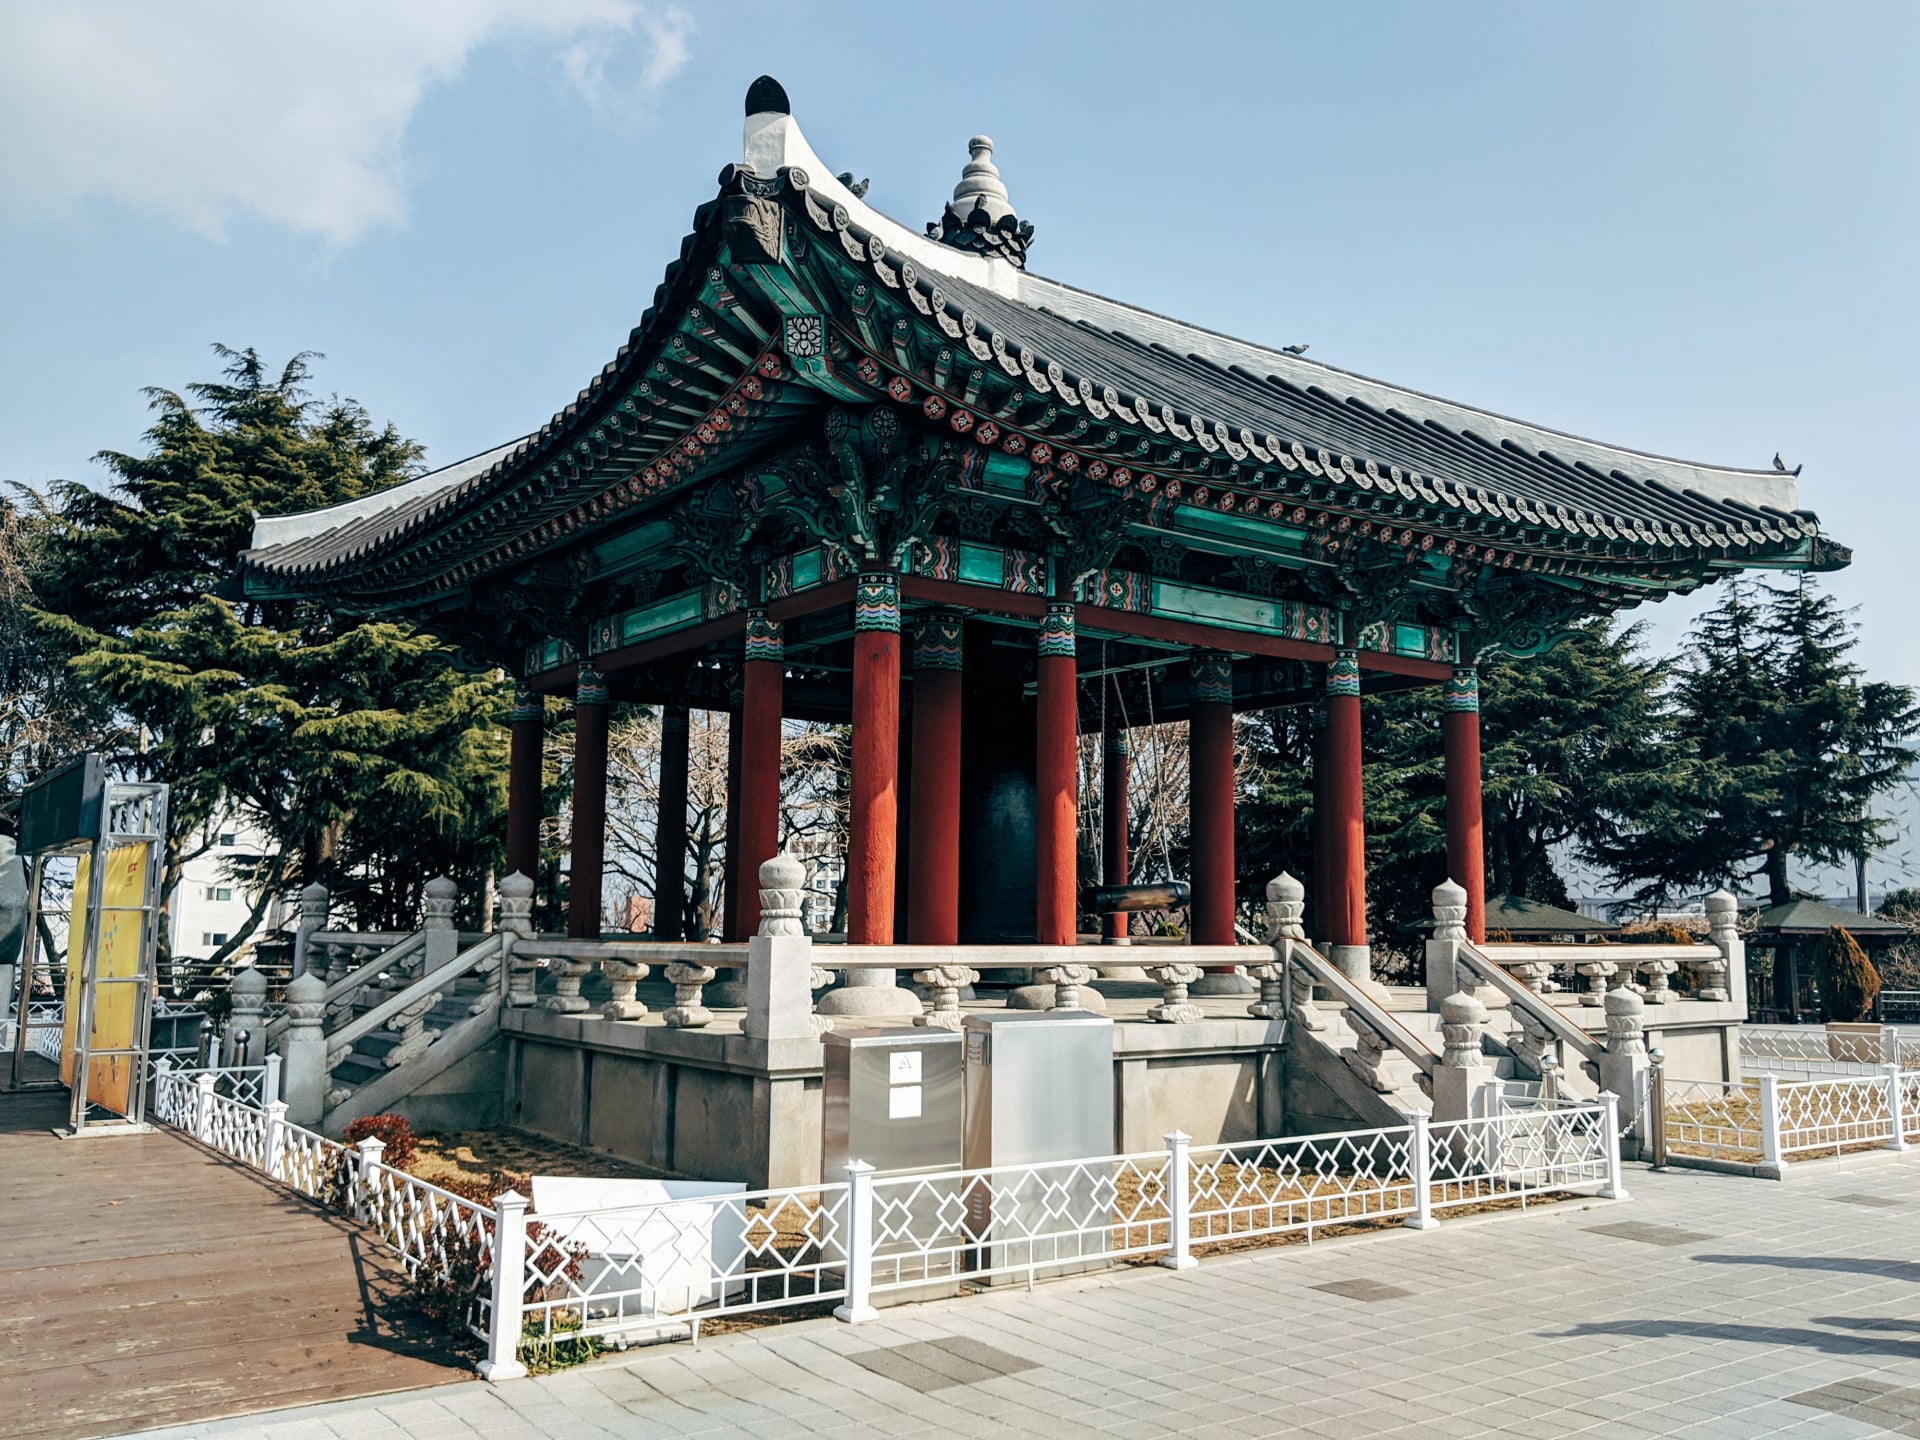 Corée du Sud : un aperçu de sa culture